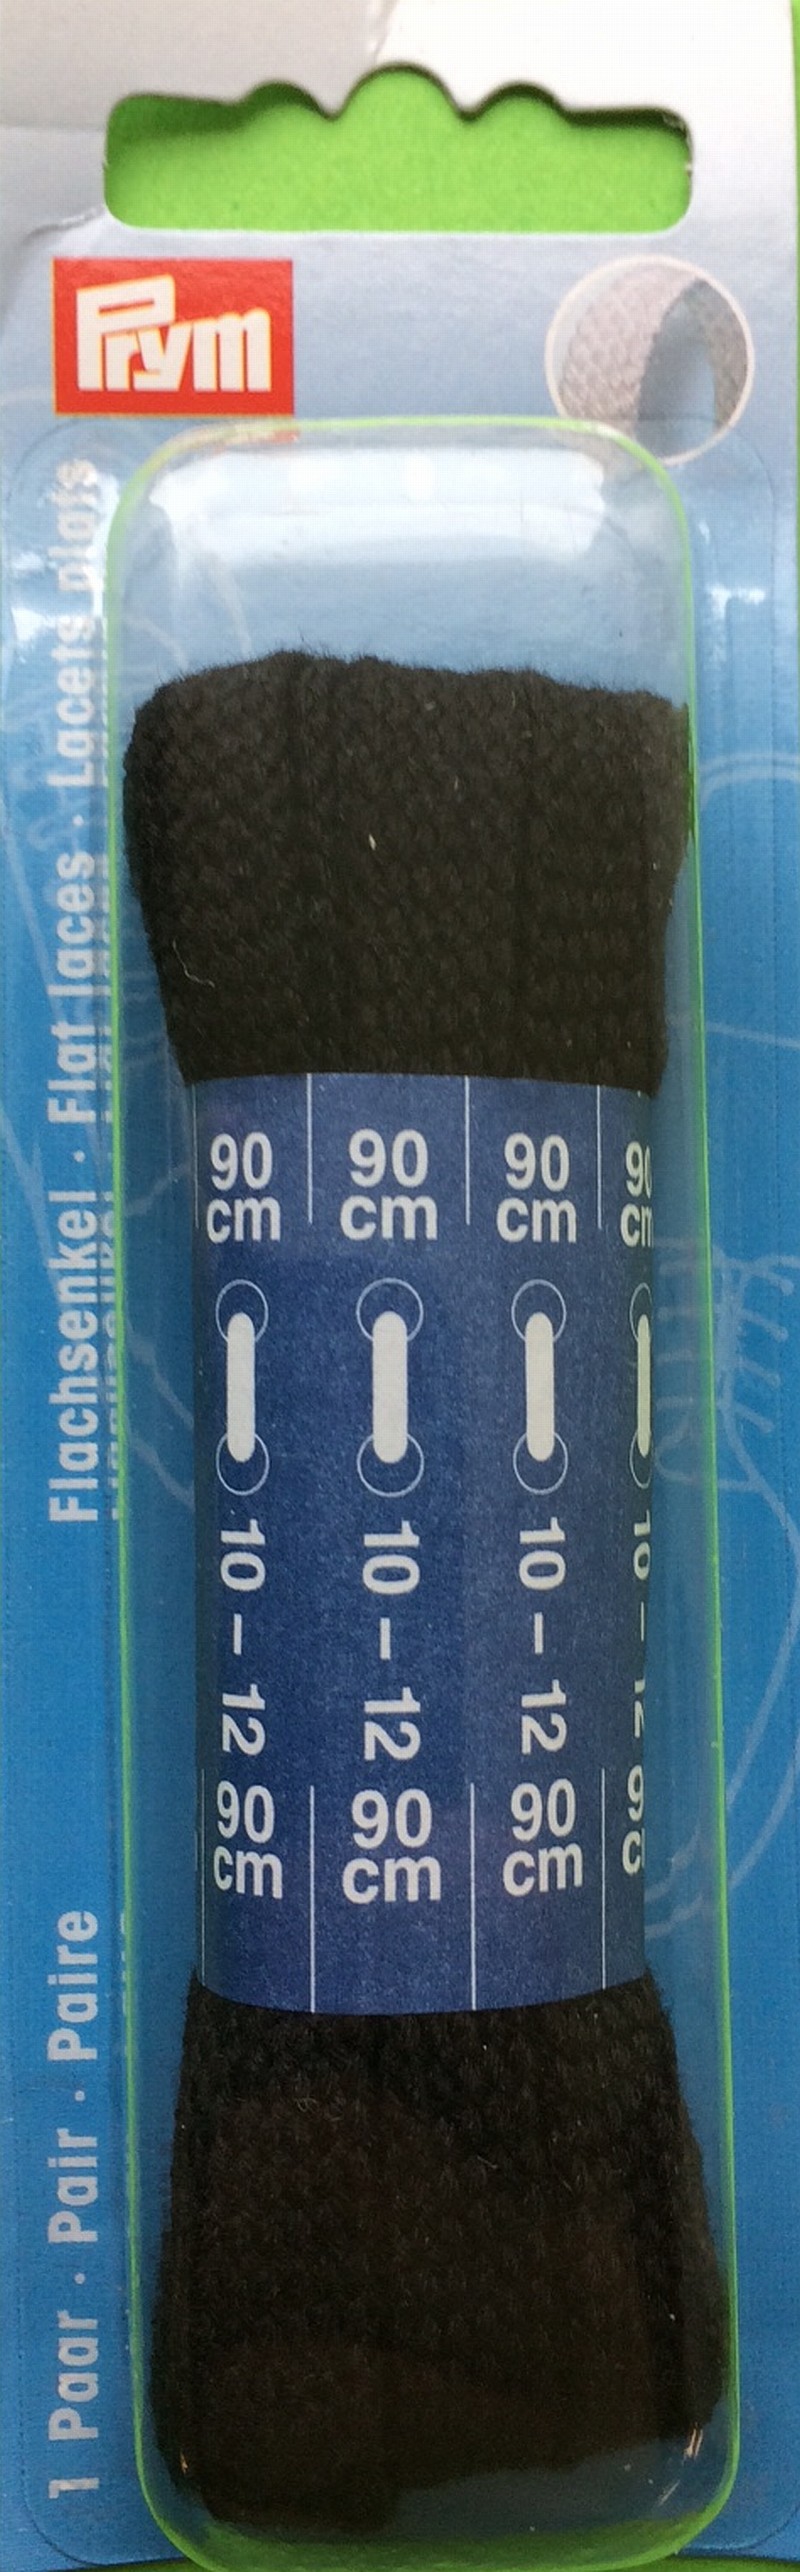 P/SB Schuhband flach 8mm/90cm schwarz Prym 974 720